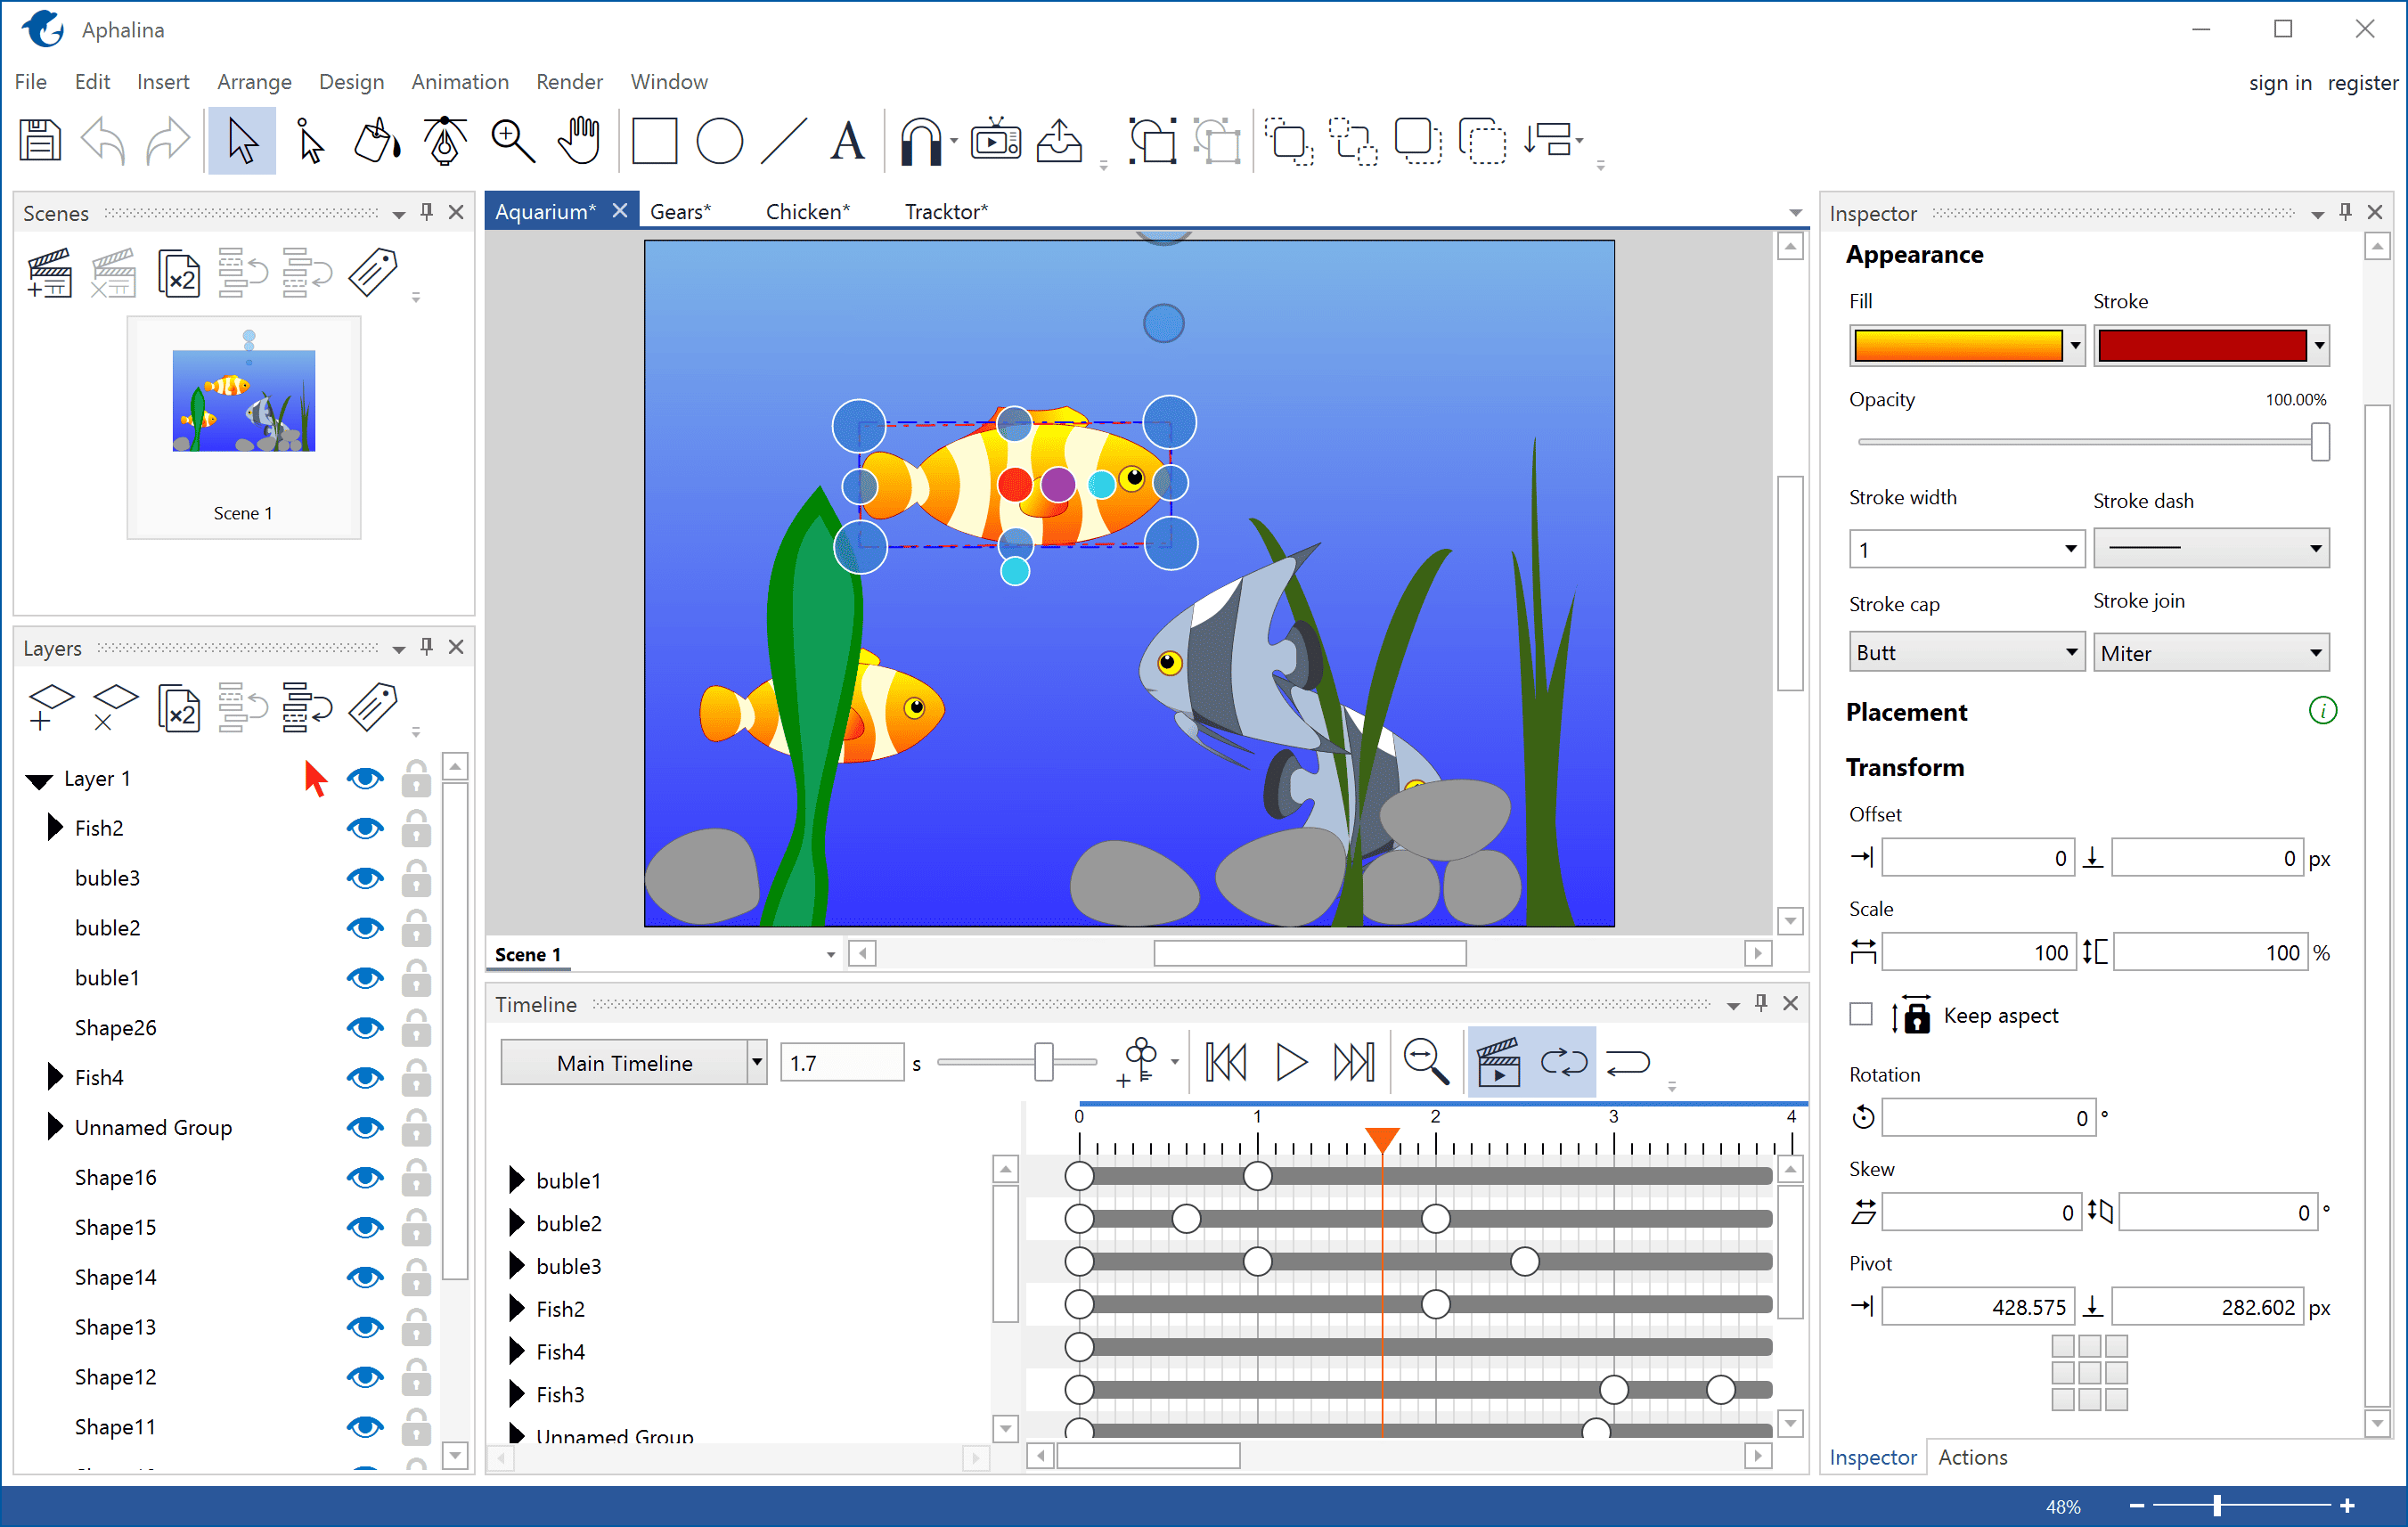 Aphalina Animator 1.5 Free Download Full